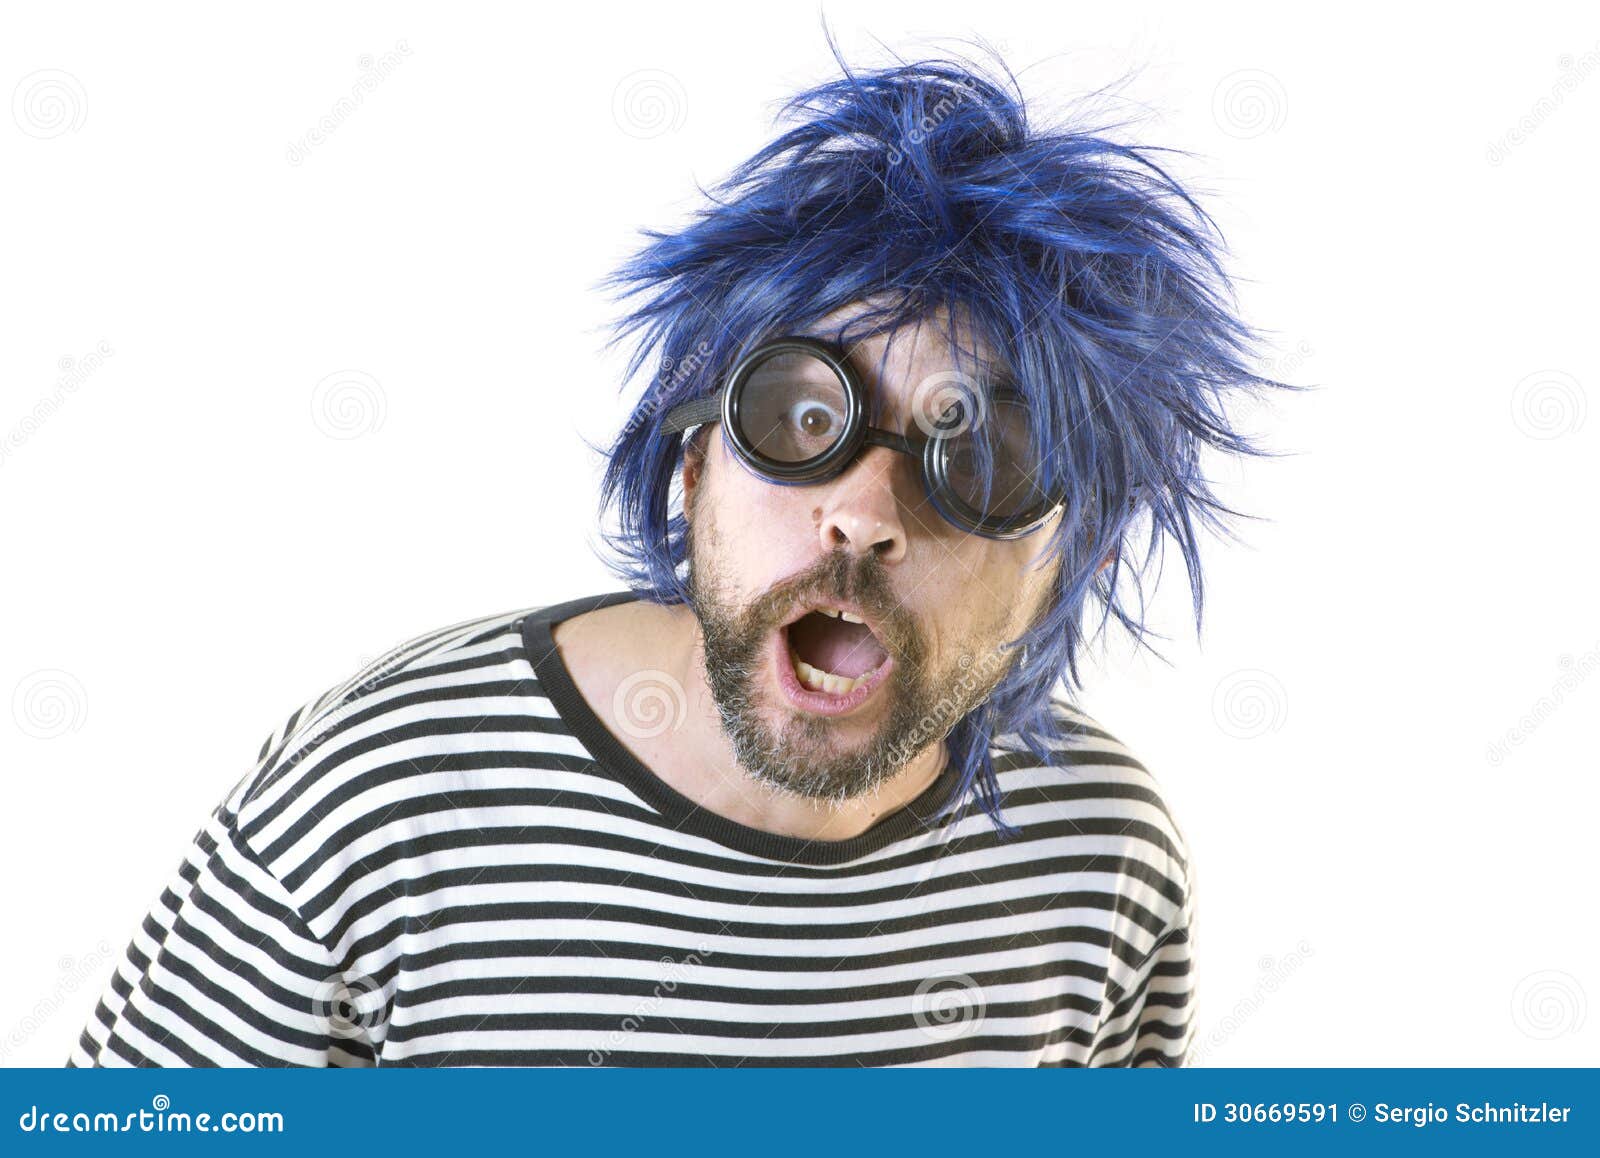 bizarre man blue hair